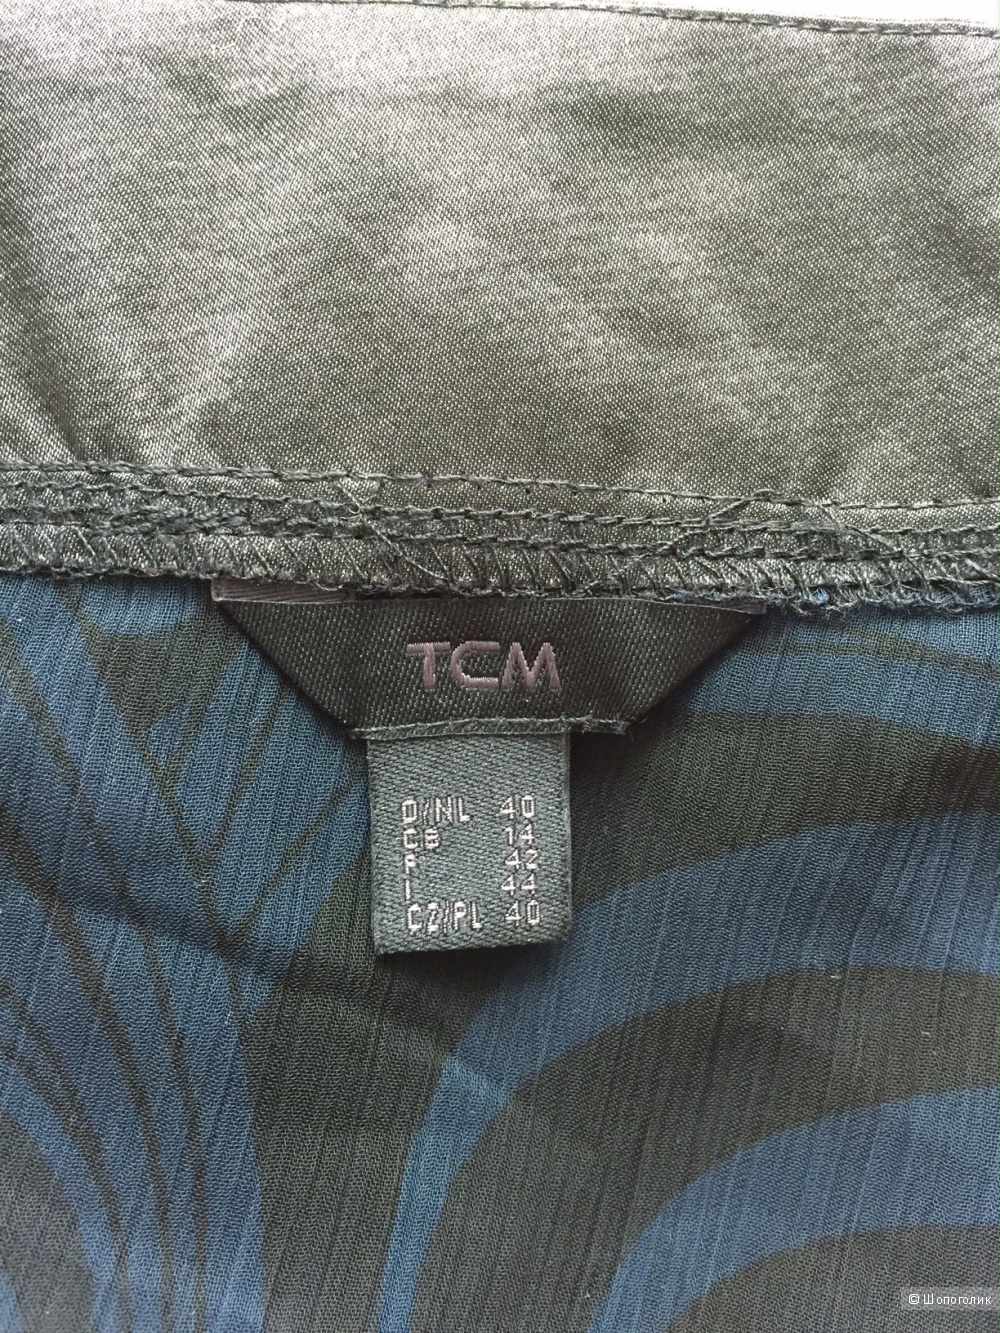 Блузка шифоновая в японском стиле марка TCM размер M.